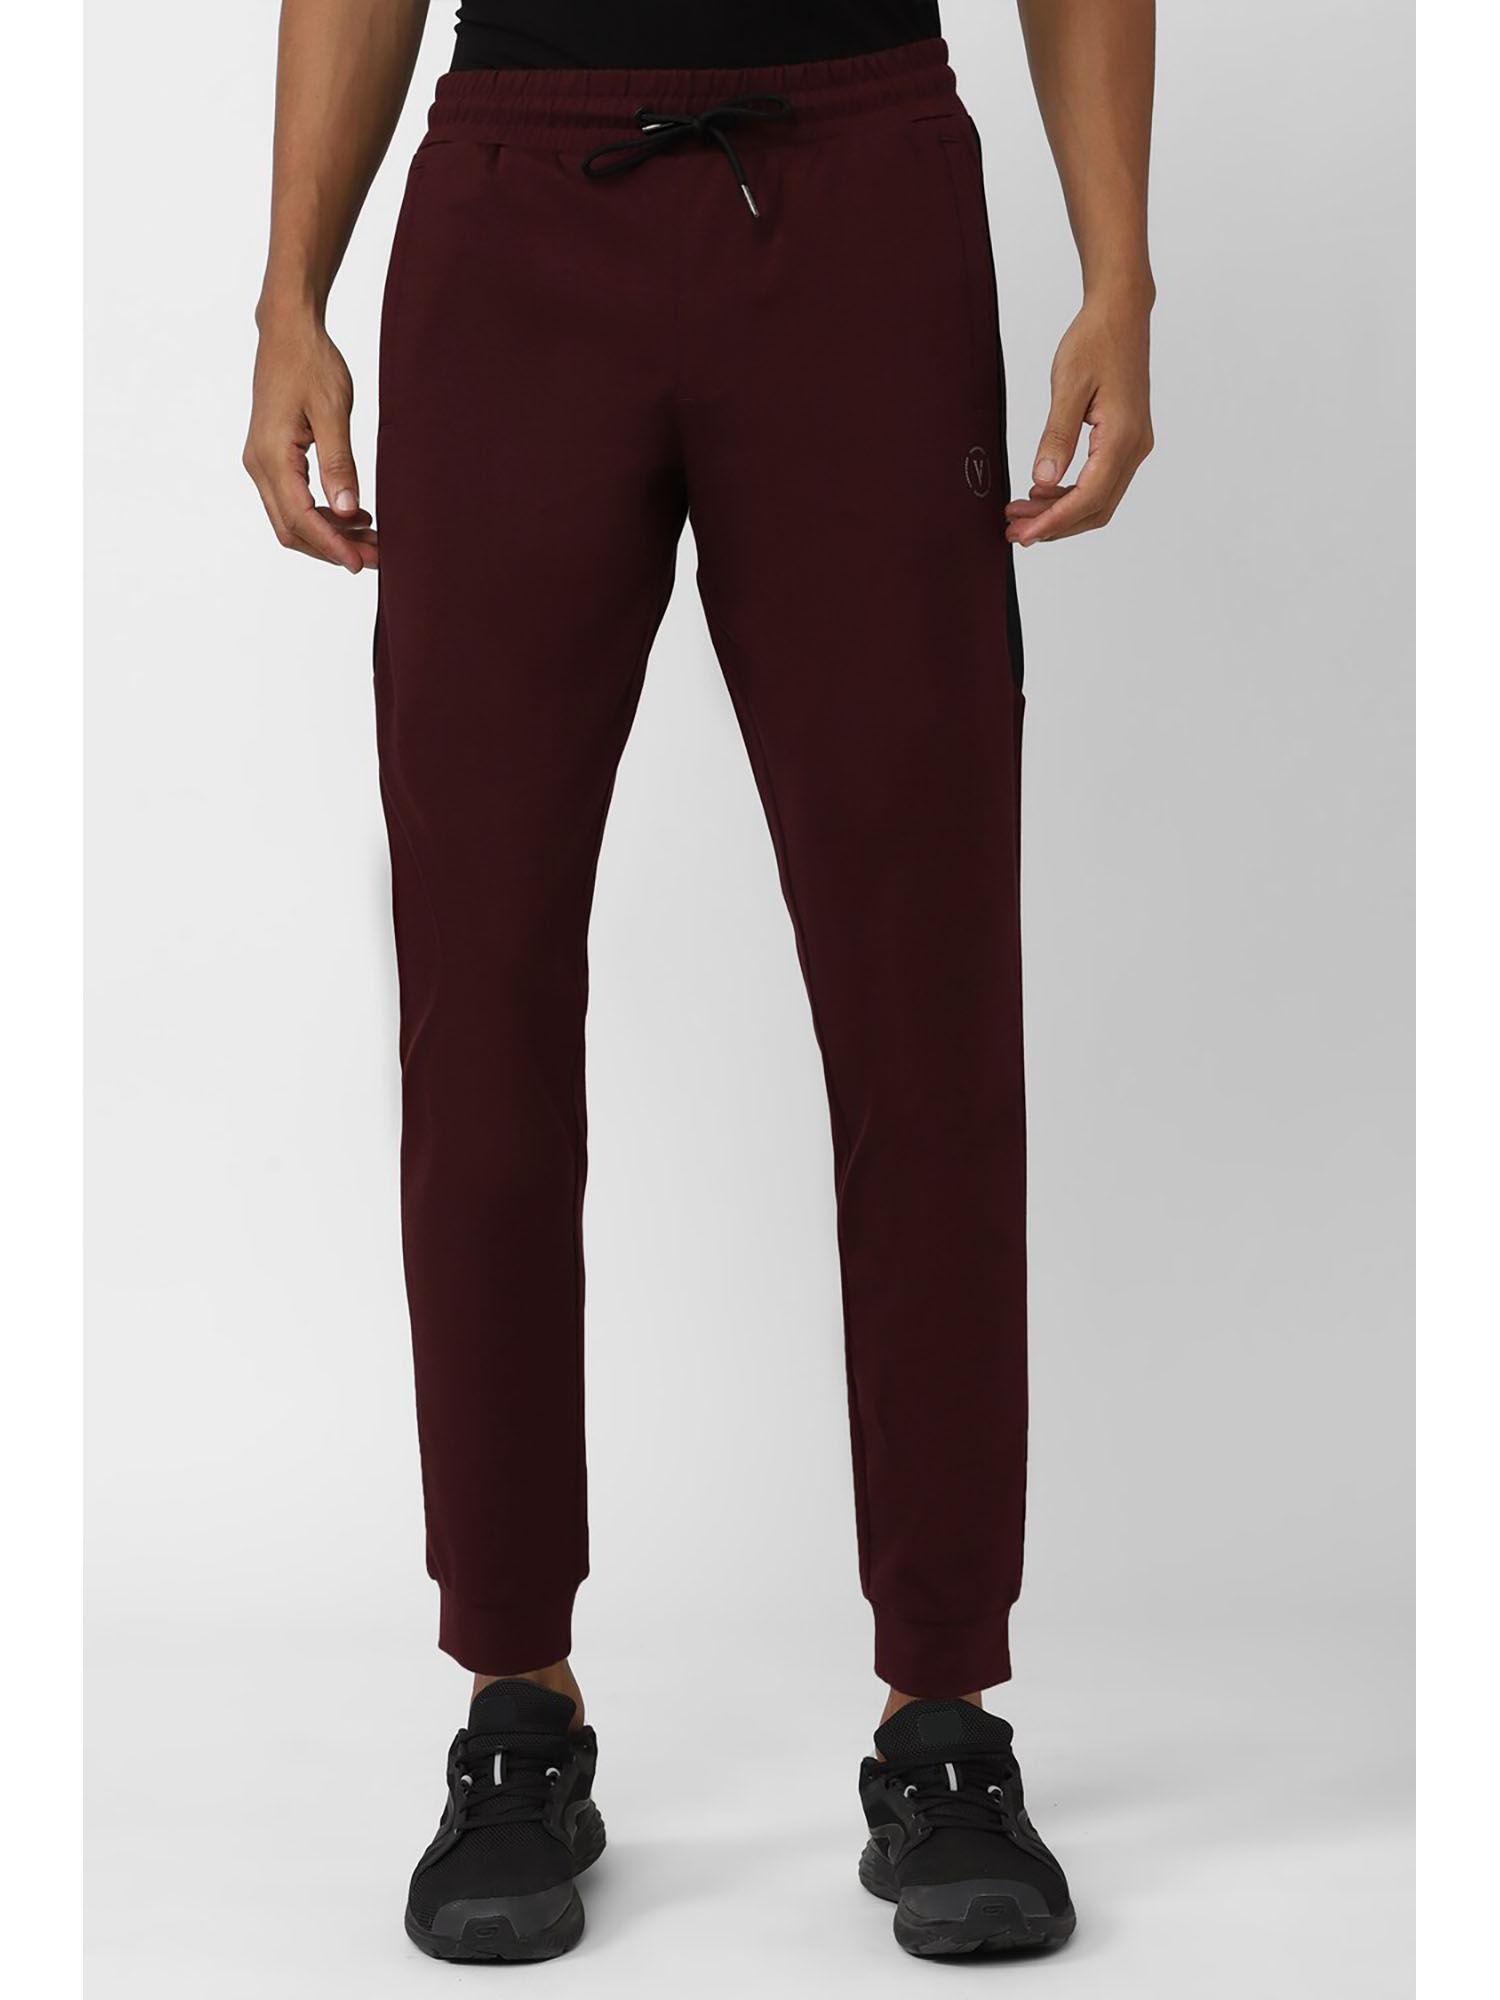 men maroon solid casual joggers pants